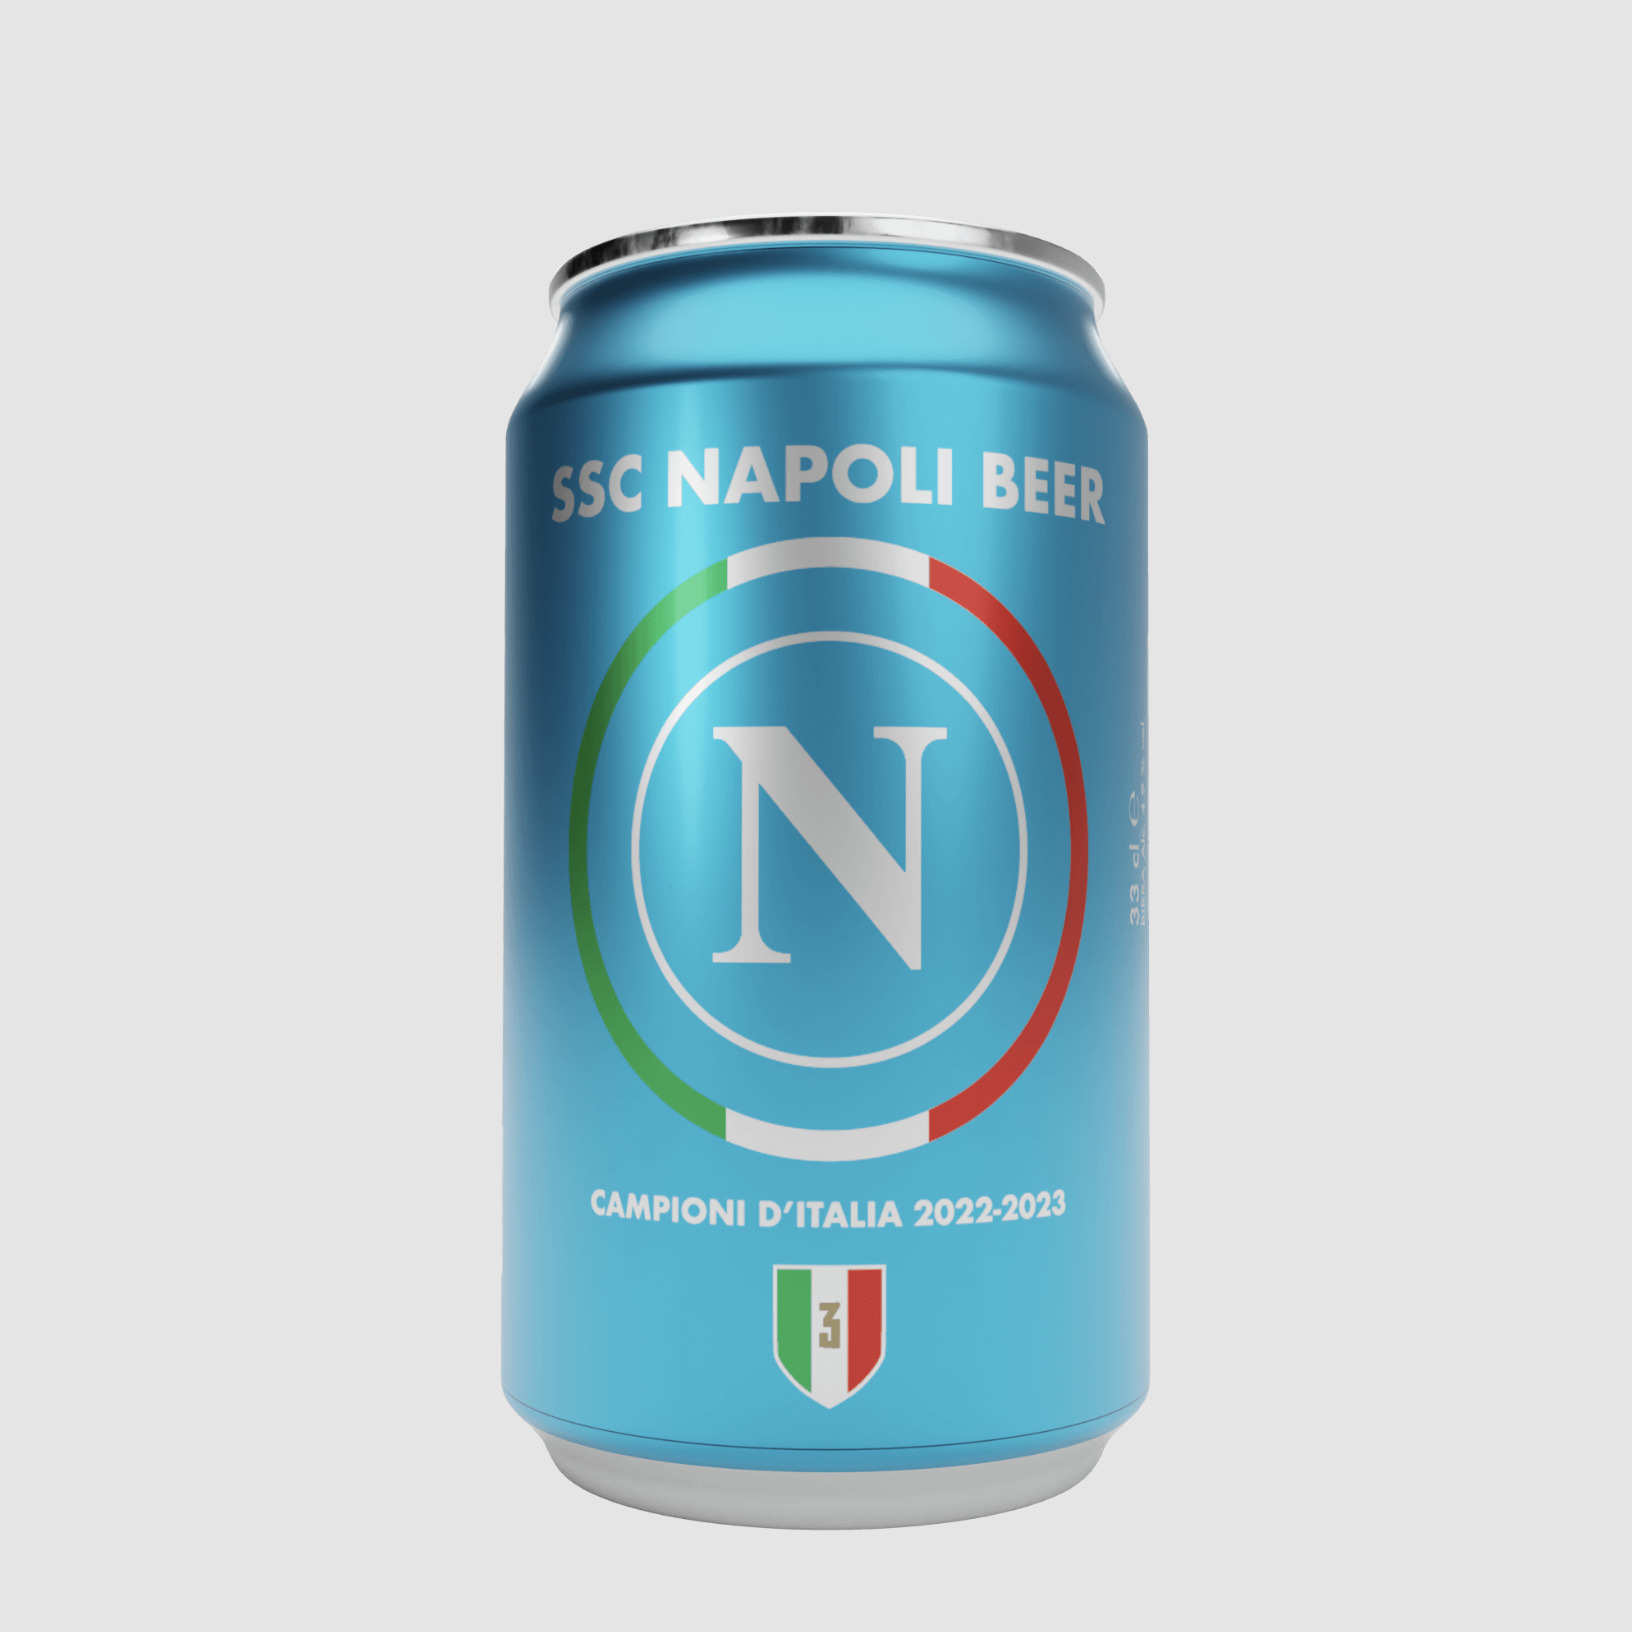 La birra ufficiale del Napoli